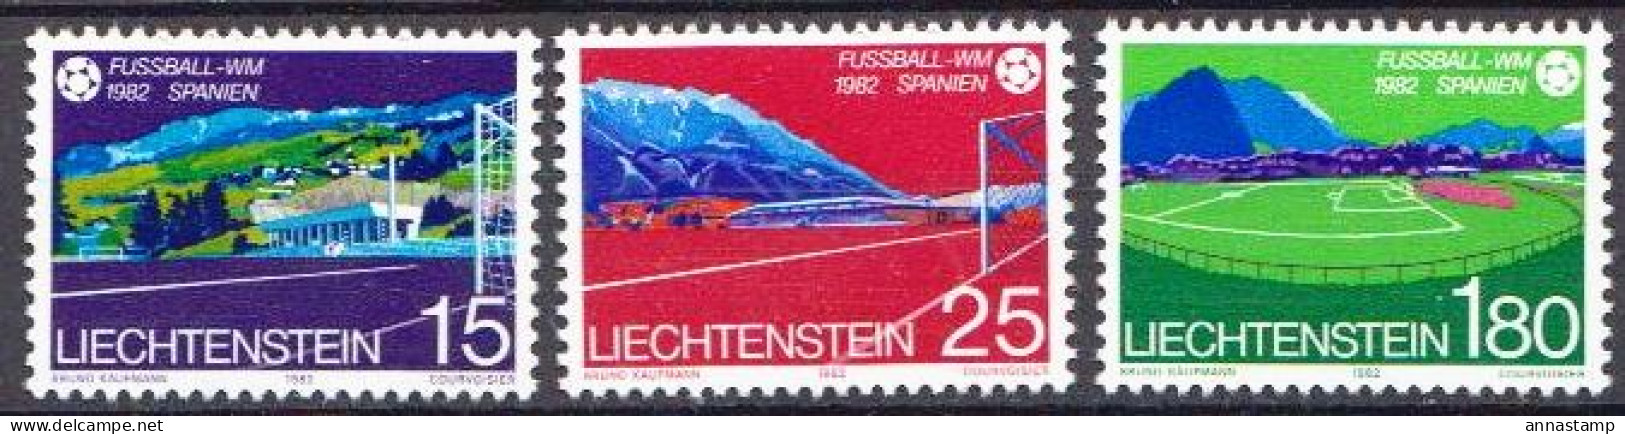 Liechtenstein MNH Set - 1982 – Spain